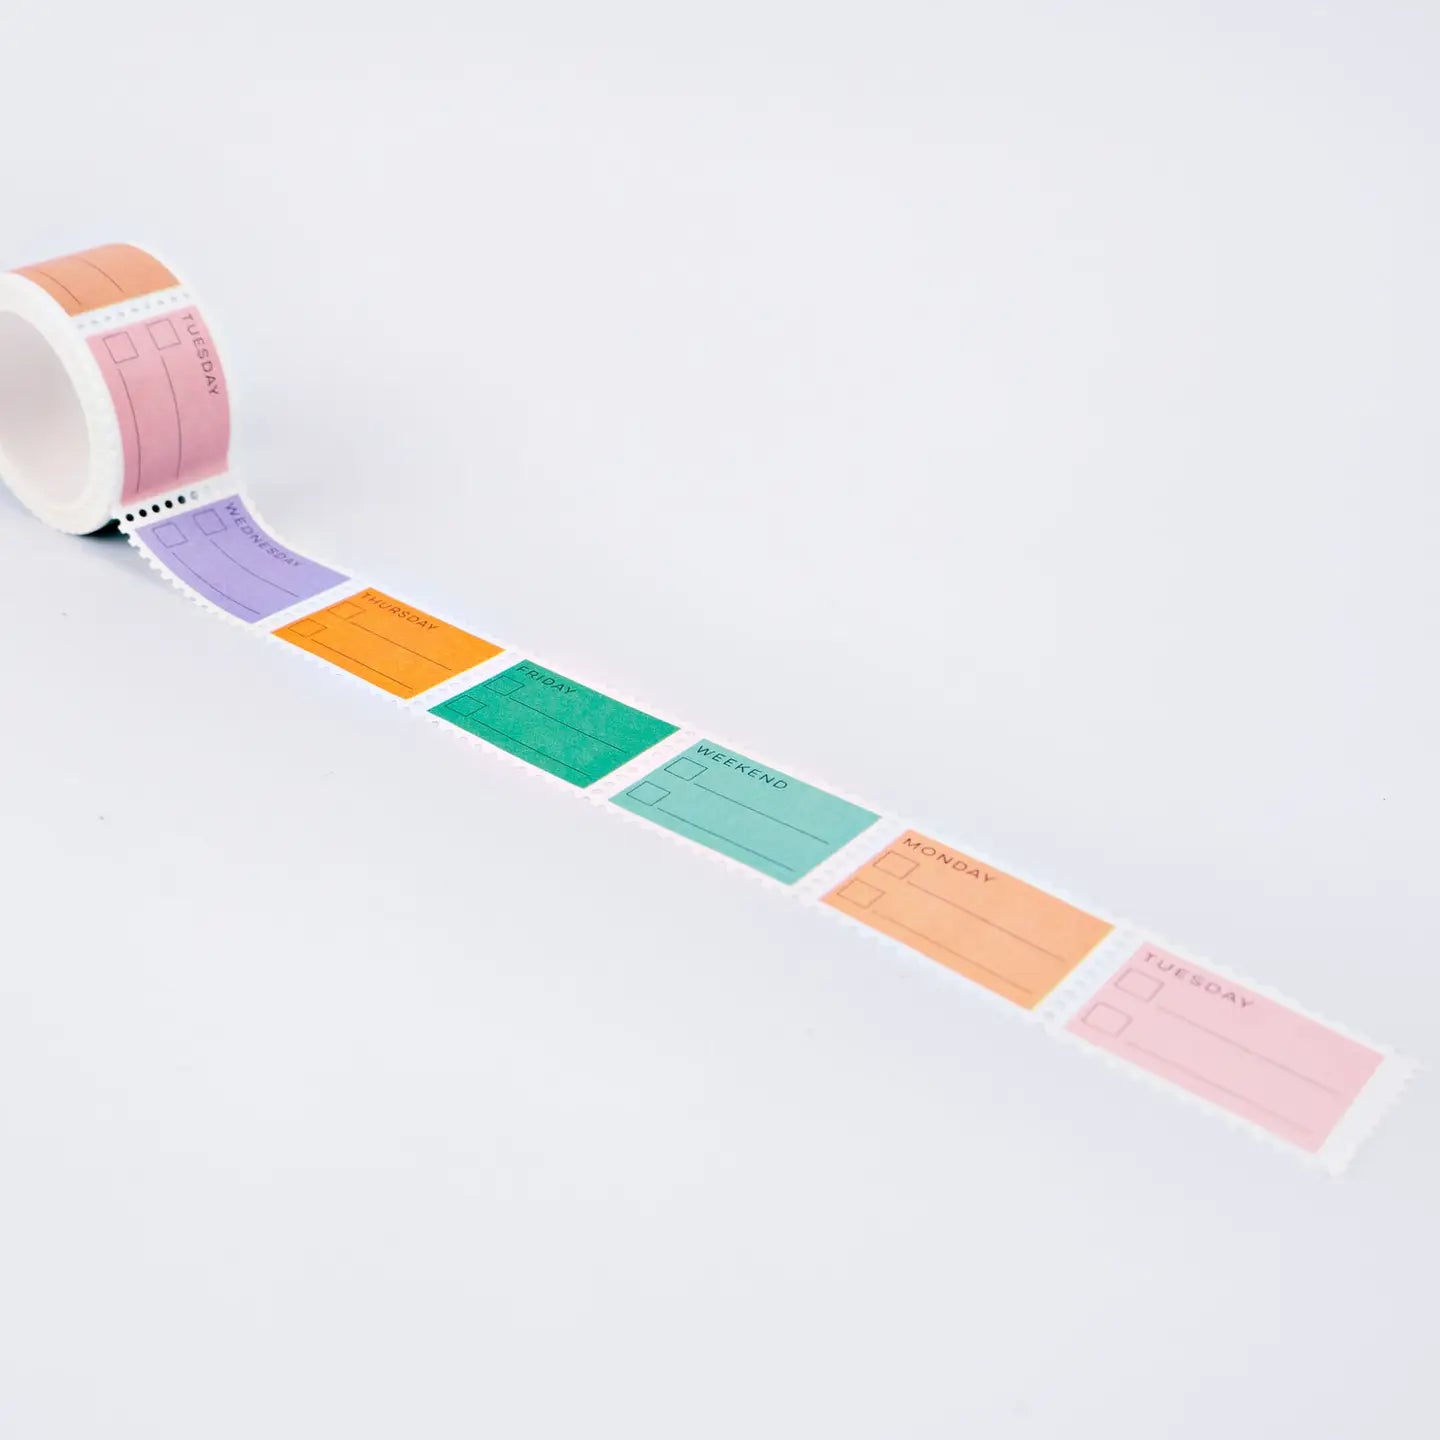 Pastel Days of the Week Stamp Washi Tape